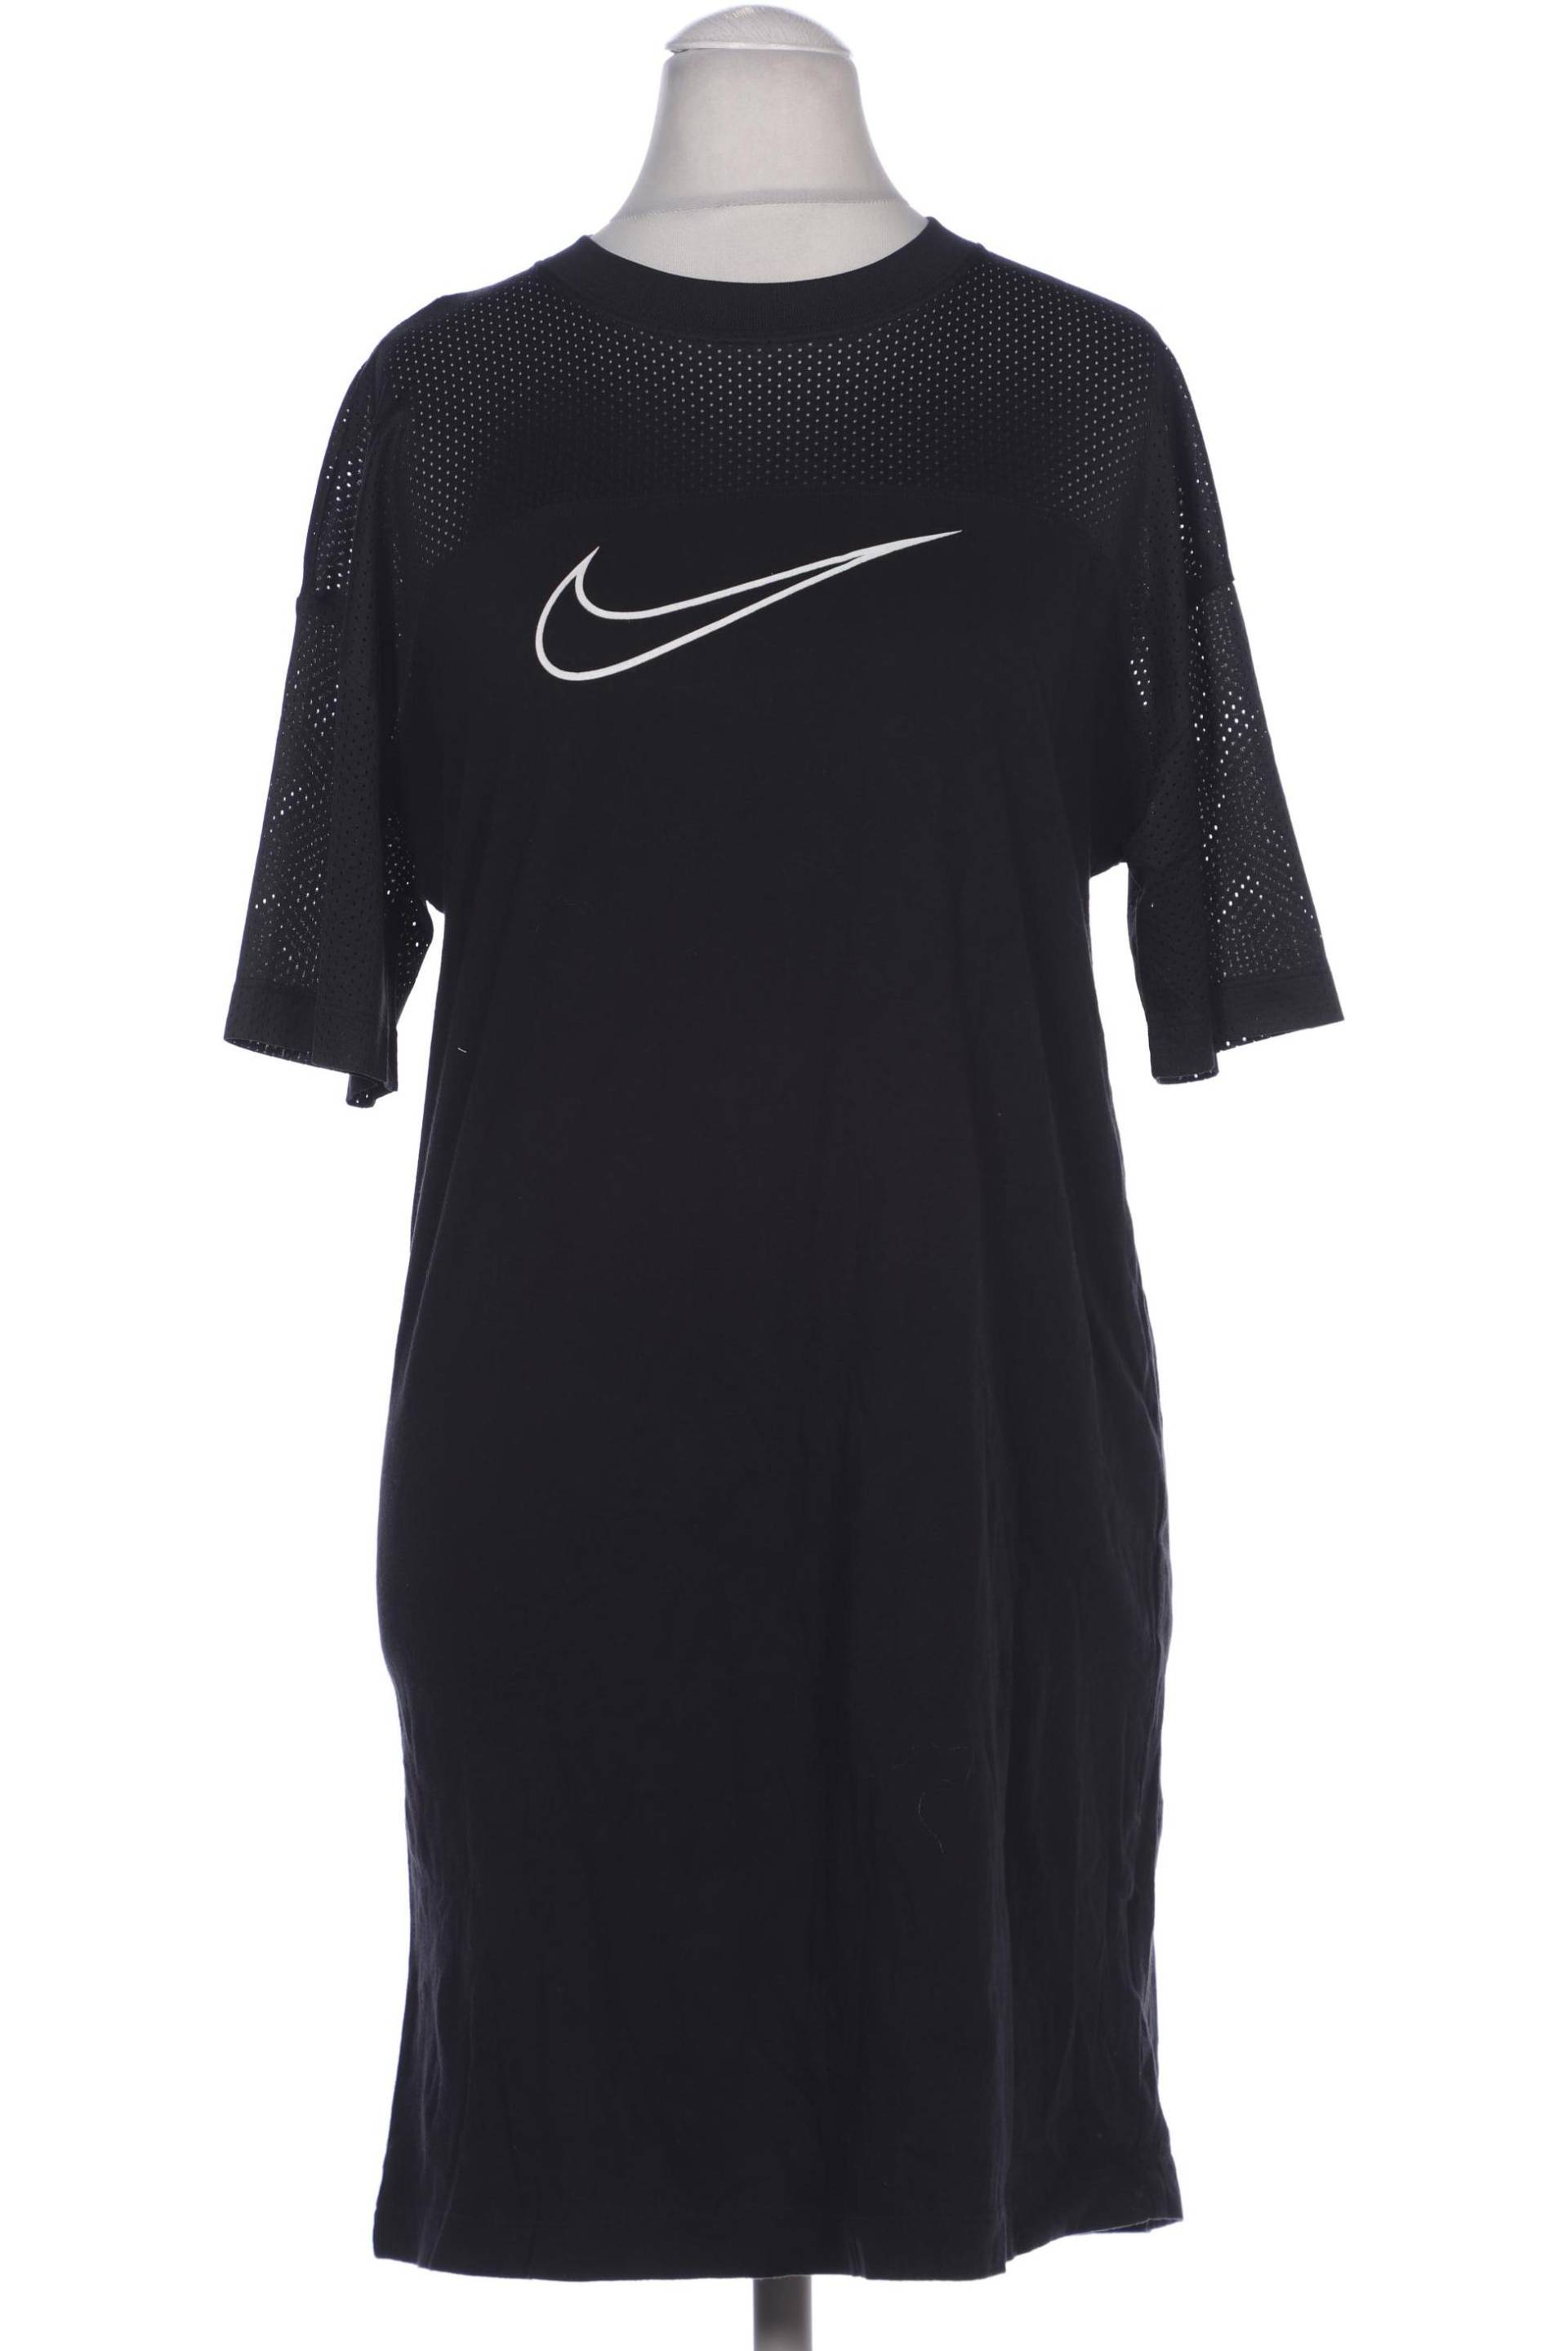 Nike Damen Kleid, schwarz, Gr. 36 von Nike